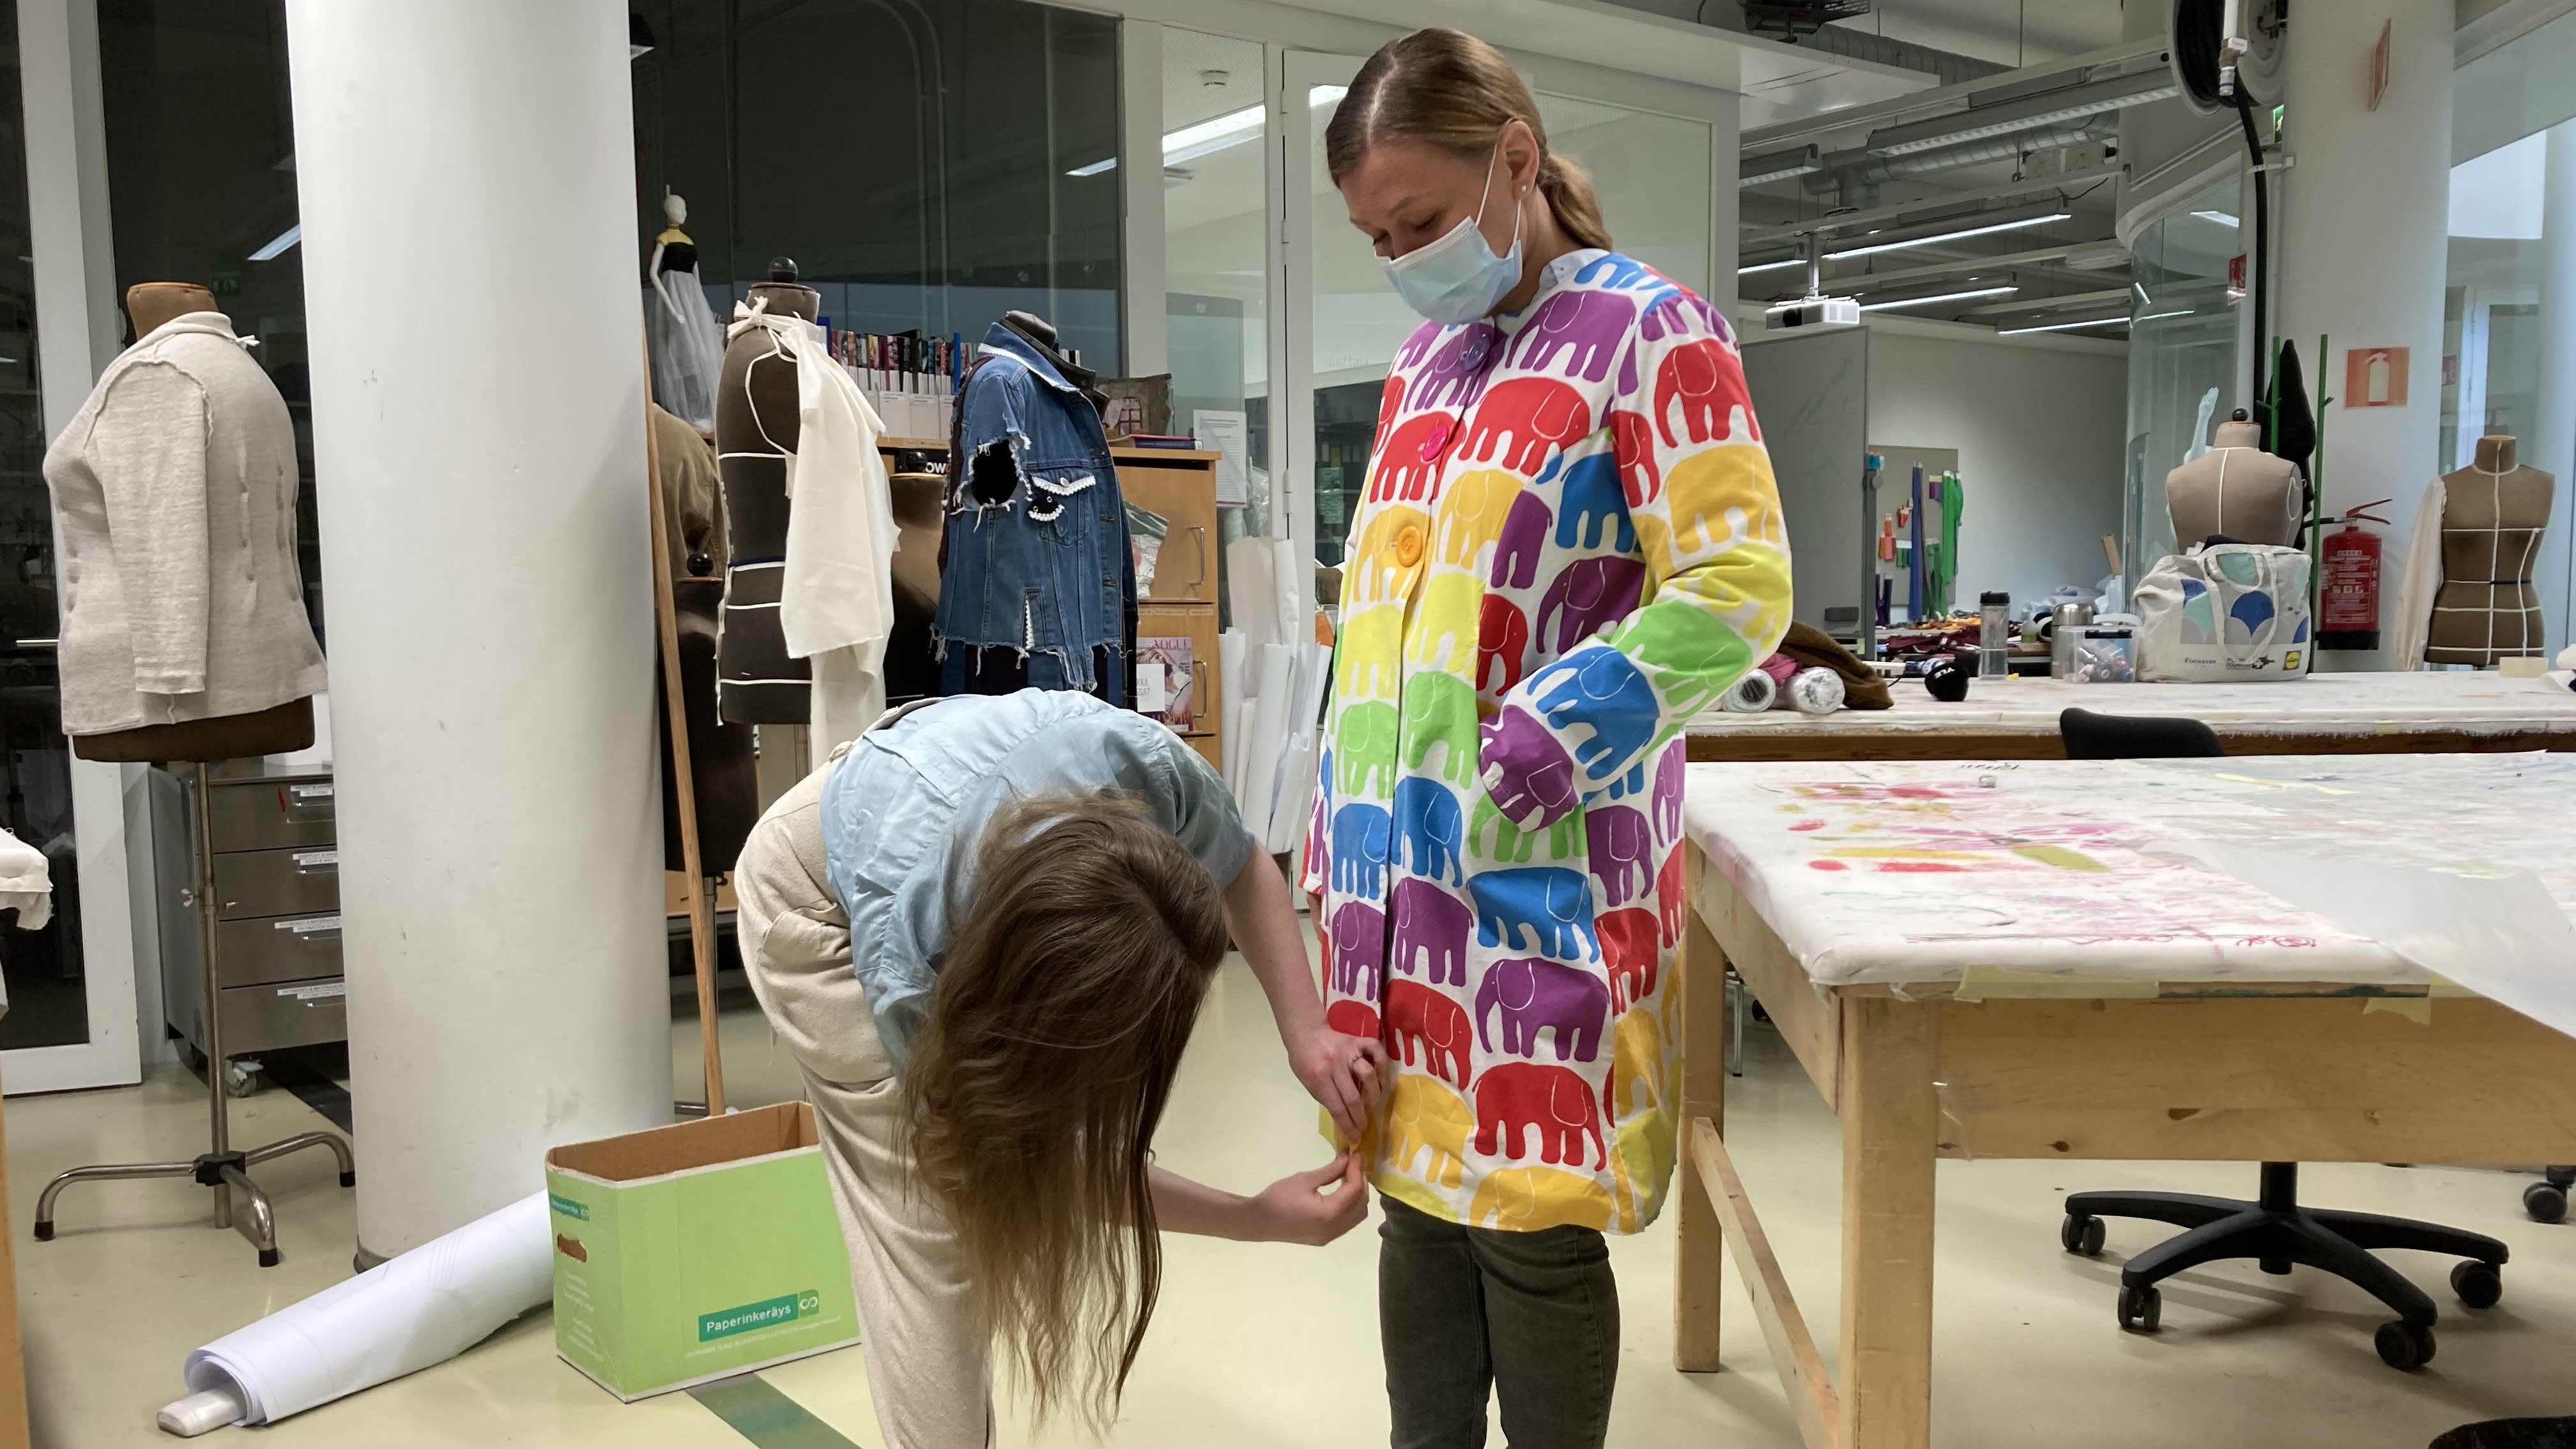 Opettaja Iida Silvennoinen asettelee elefanttikuvioista takkia, joka on muoti- ja puvustusalan opiskelija Piia Selinkosken päällä.